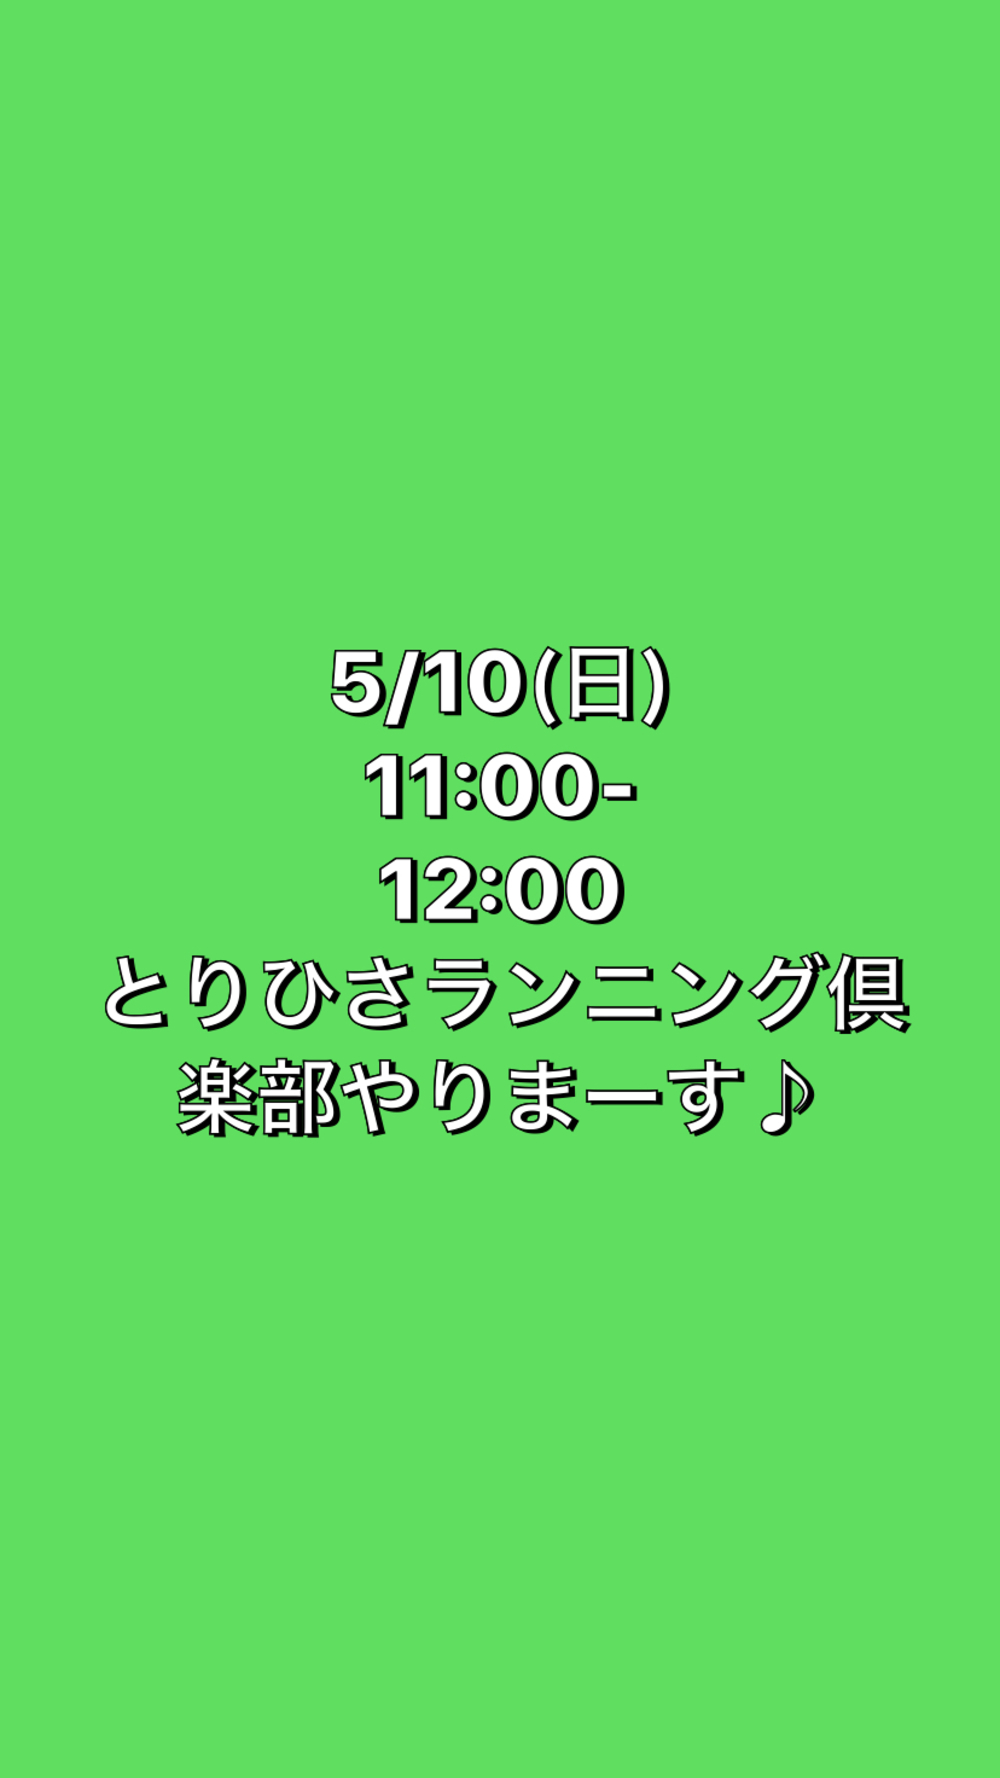 【とりひさランニング倶楽部】5/10(日)1100-12:00